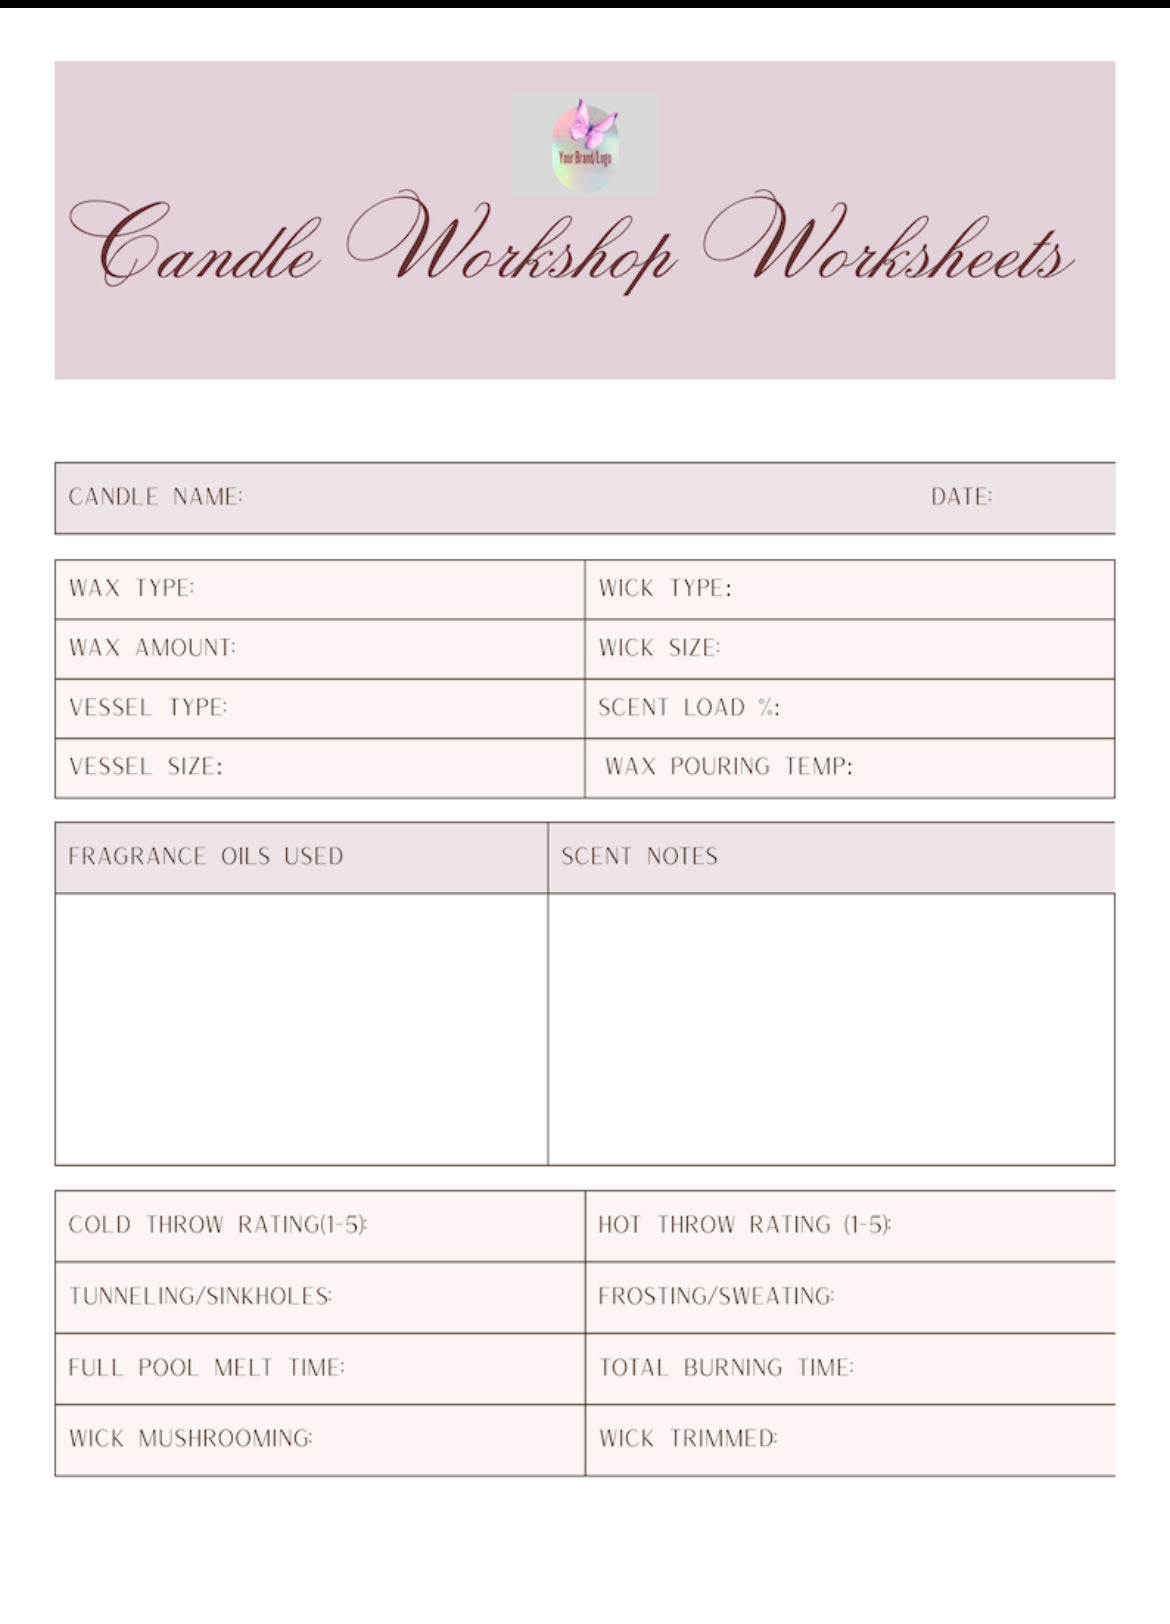 Candle Workshop Worksheets